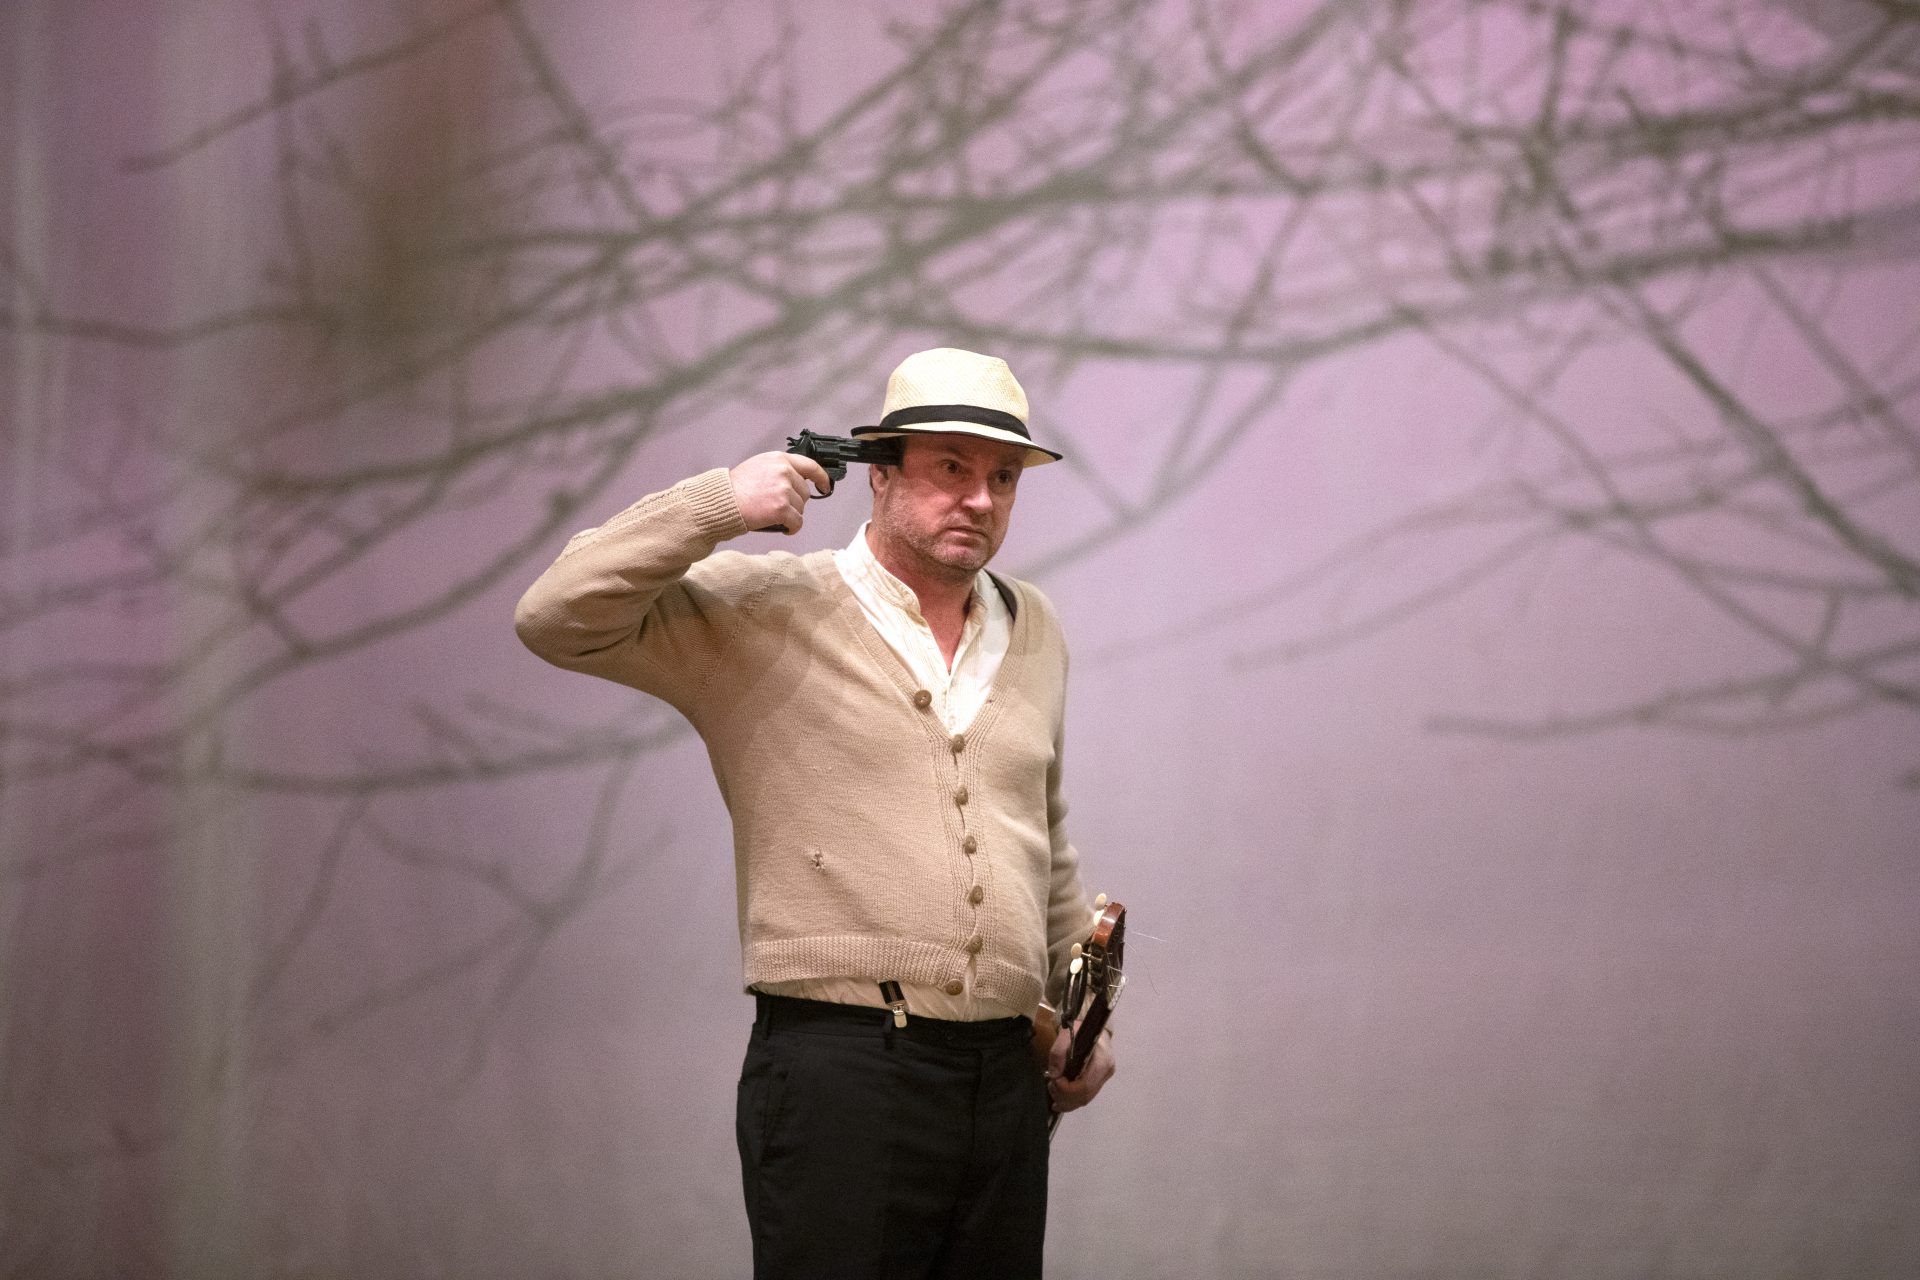 En mann med beige strikkejakke og lys hatt, holder en pistol mot hans hode. I bakgrunnen ser man greiner fra et kirsebærtre.